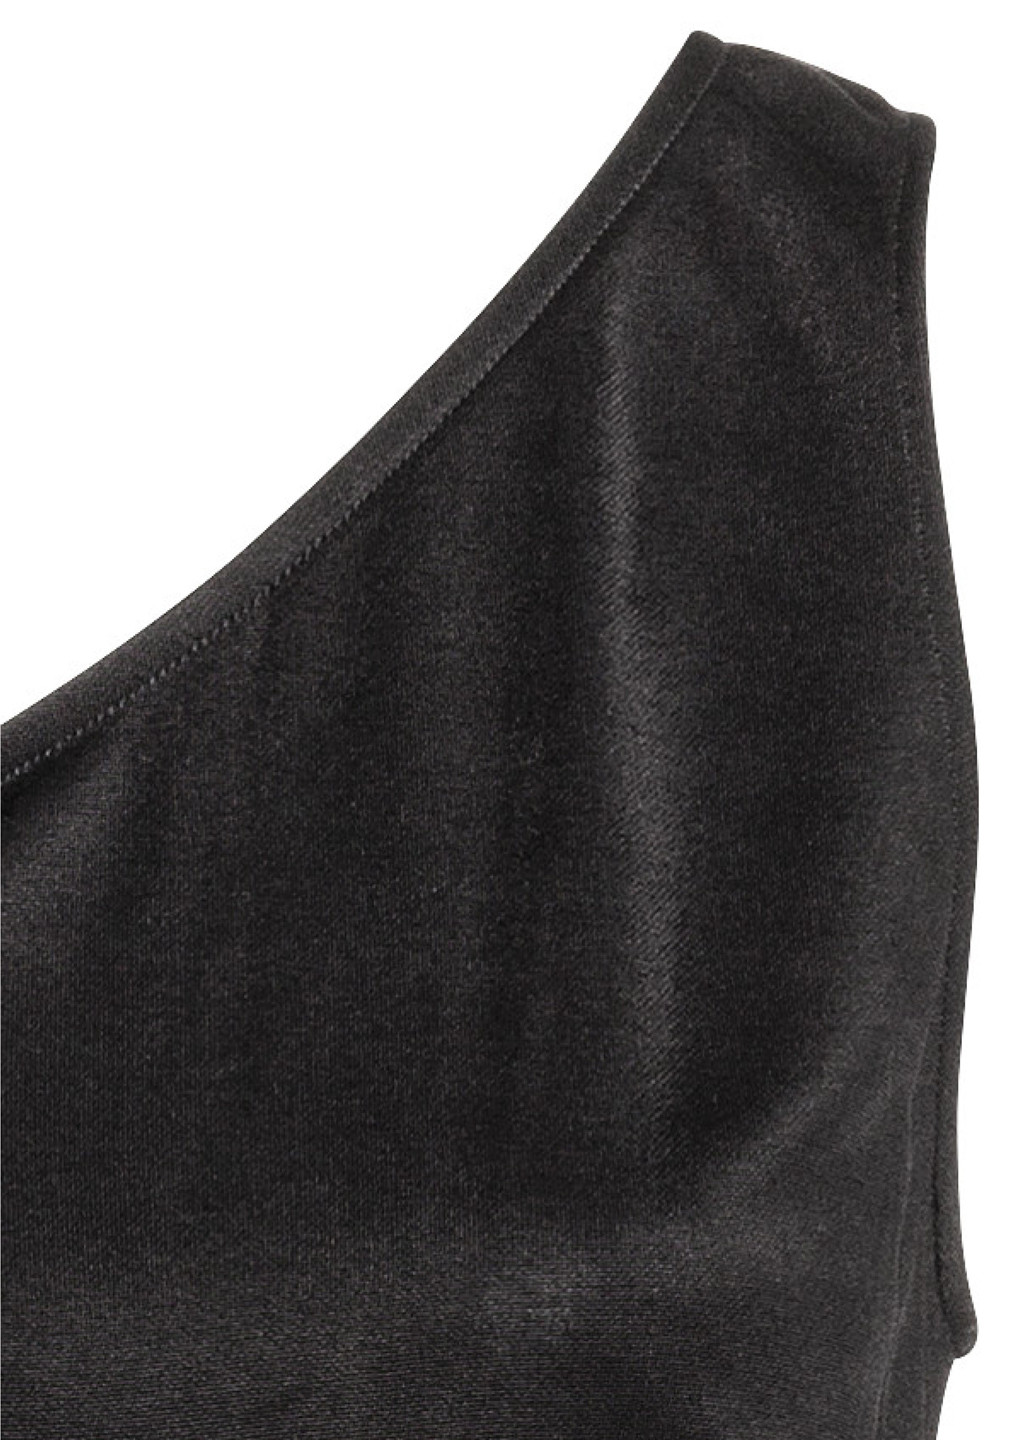 Комбинезон H&M комбинезон-брюки однотонный чёрный вечерний